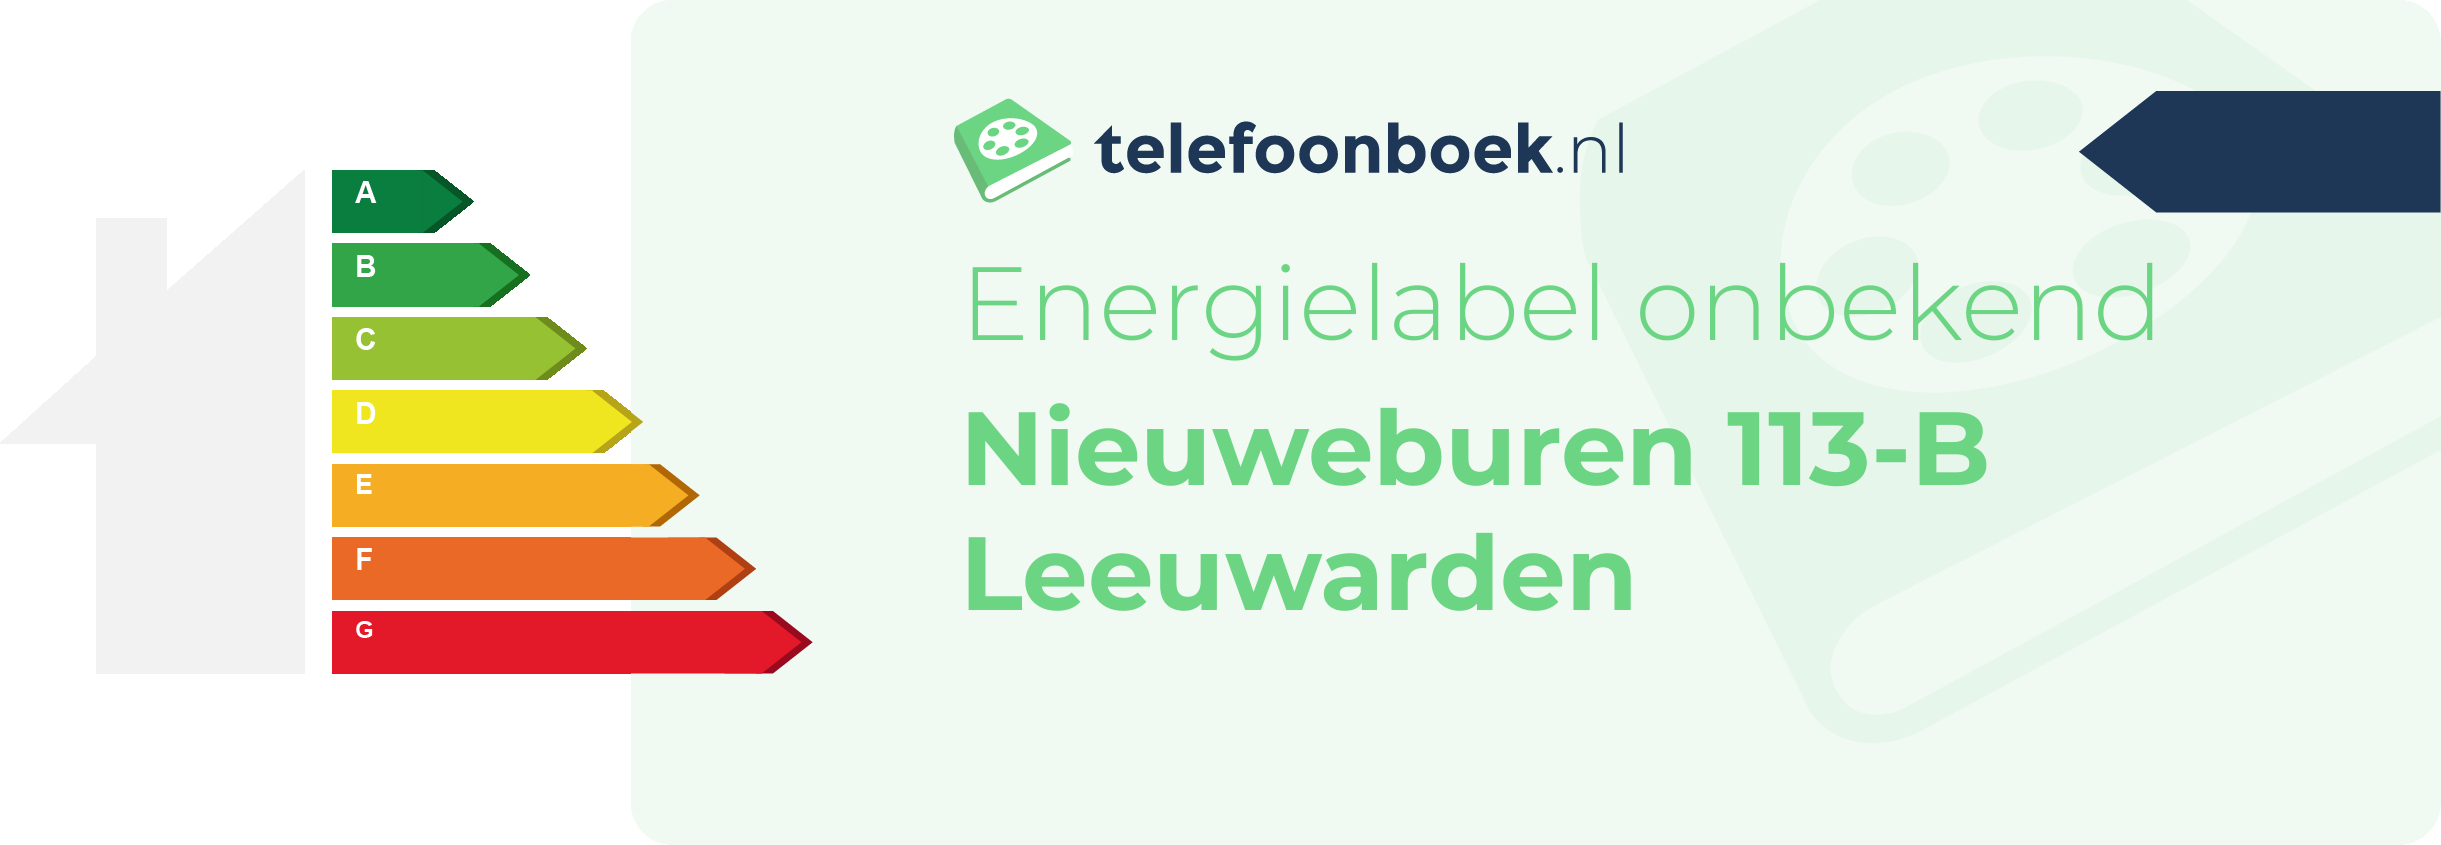 Energielabel Nieuweburen 113-B Leeuwarden